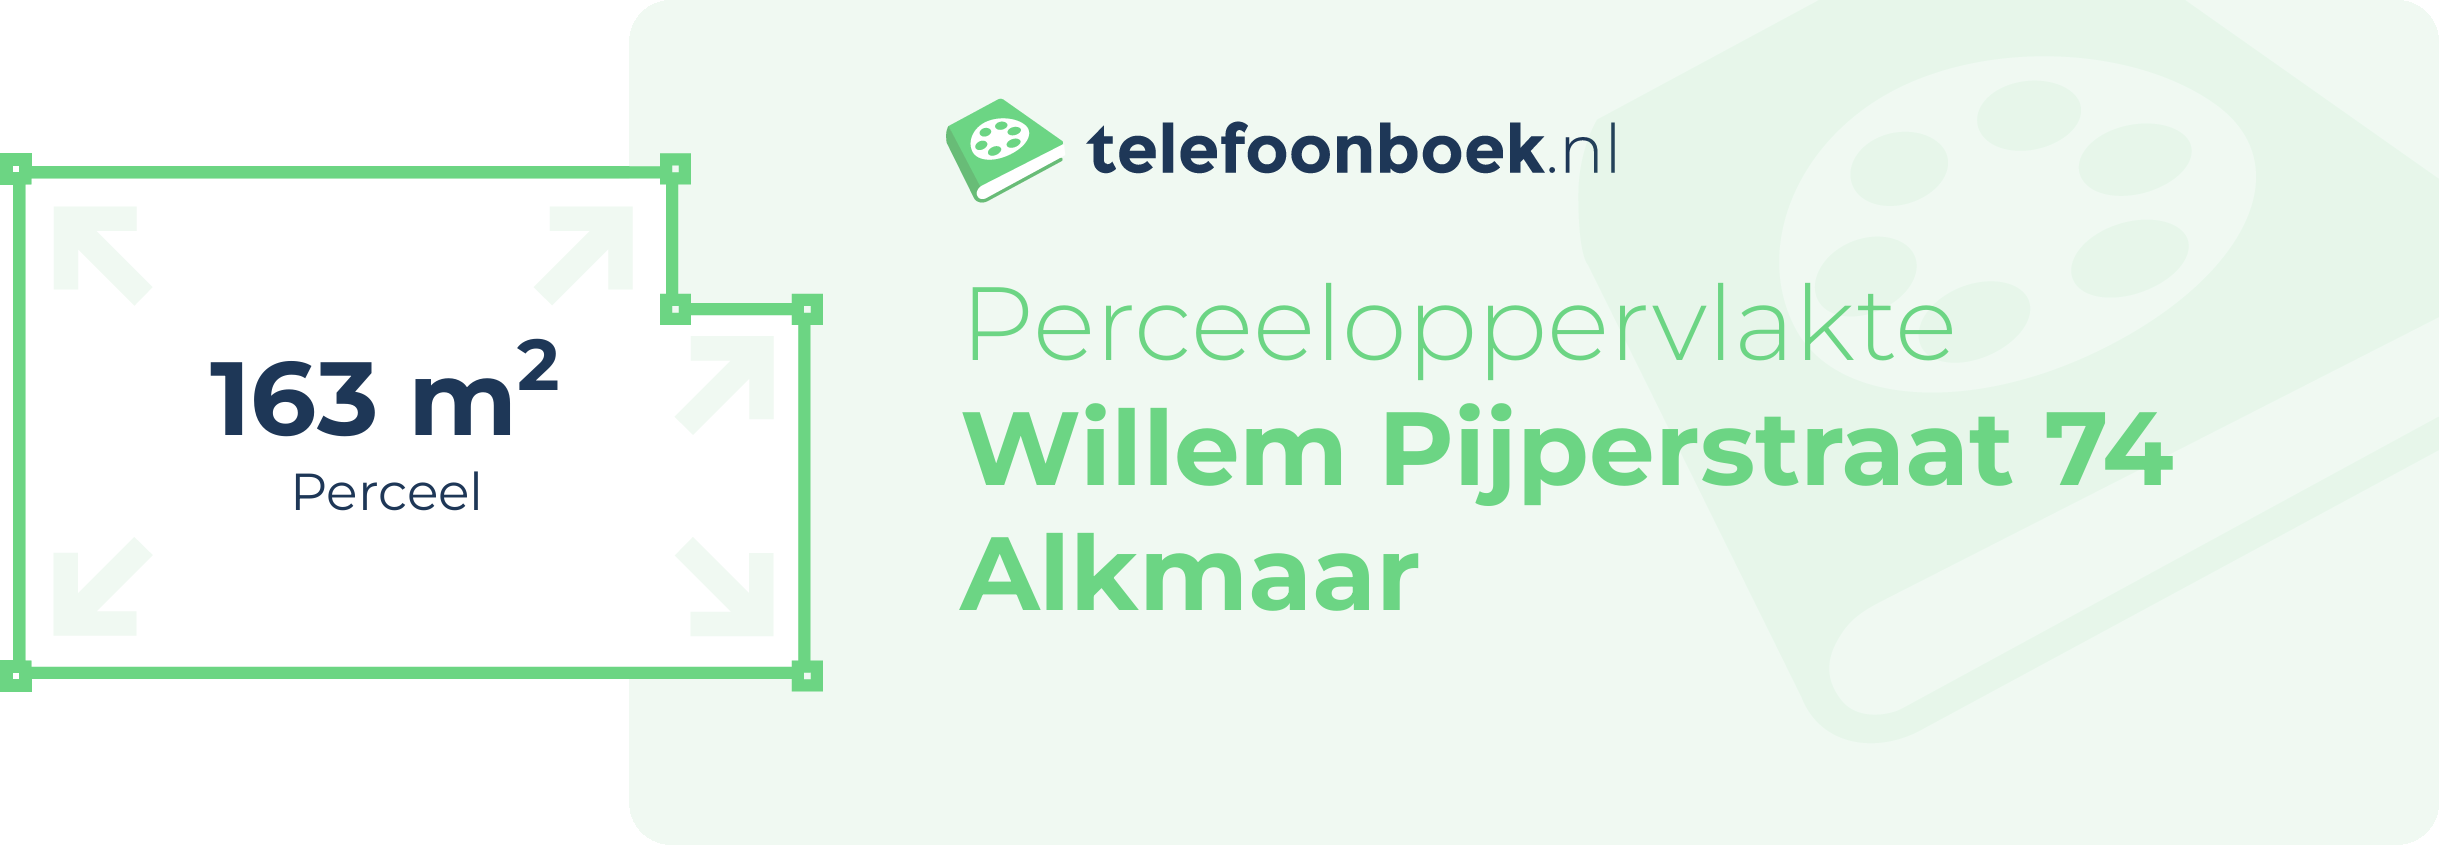 Perceeloppervlakte Willem Pijperstraat 74 Alkmaar